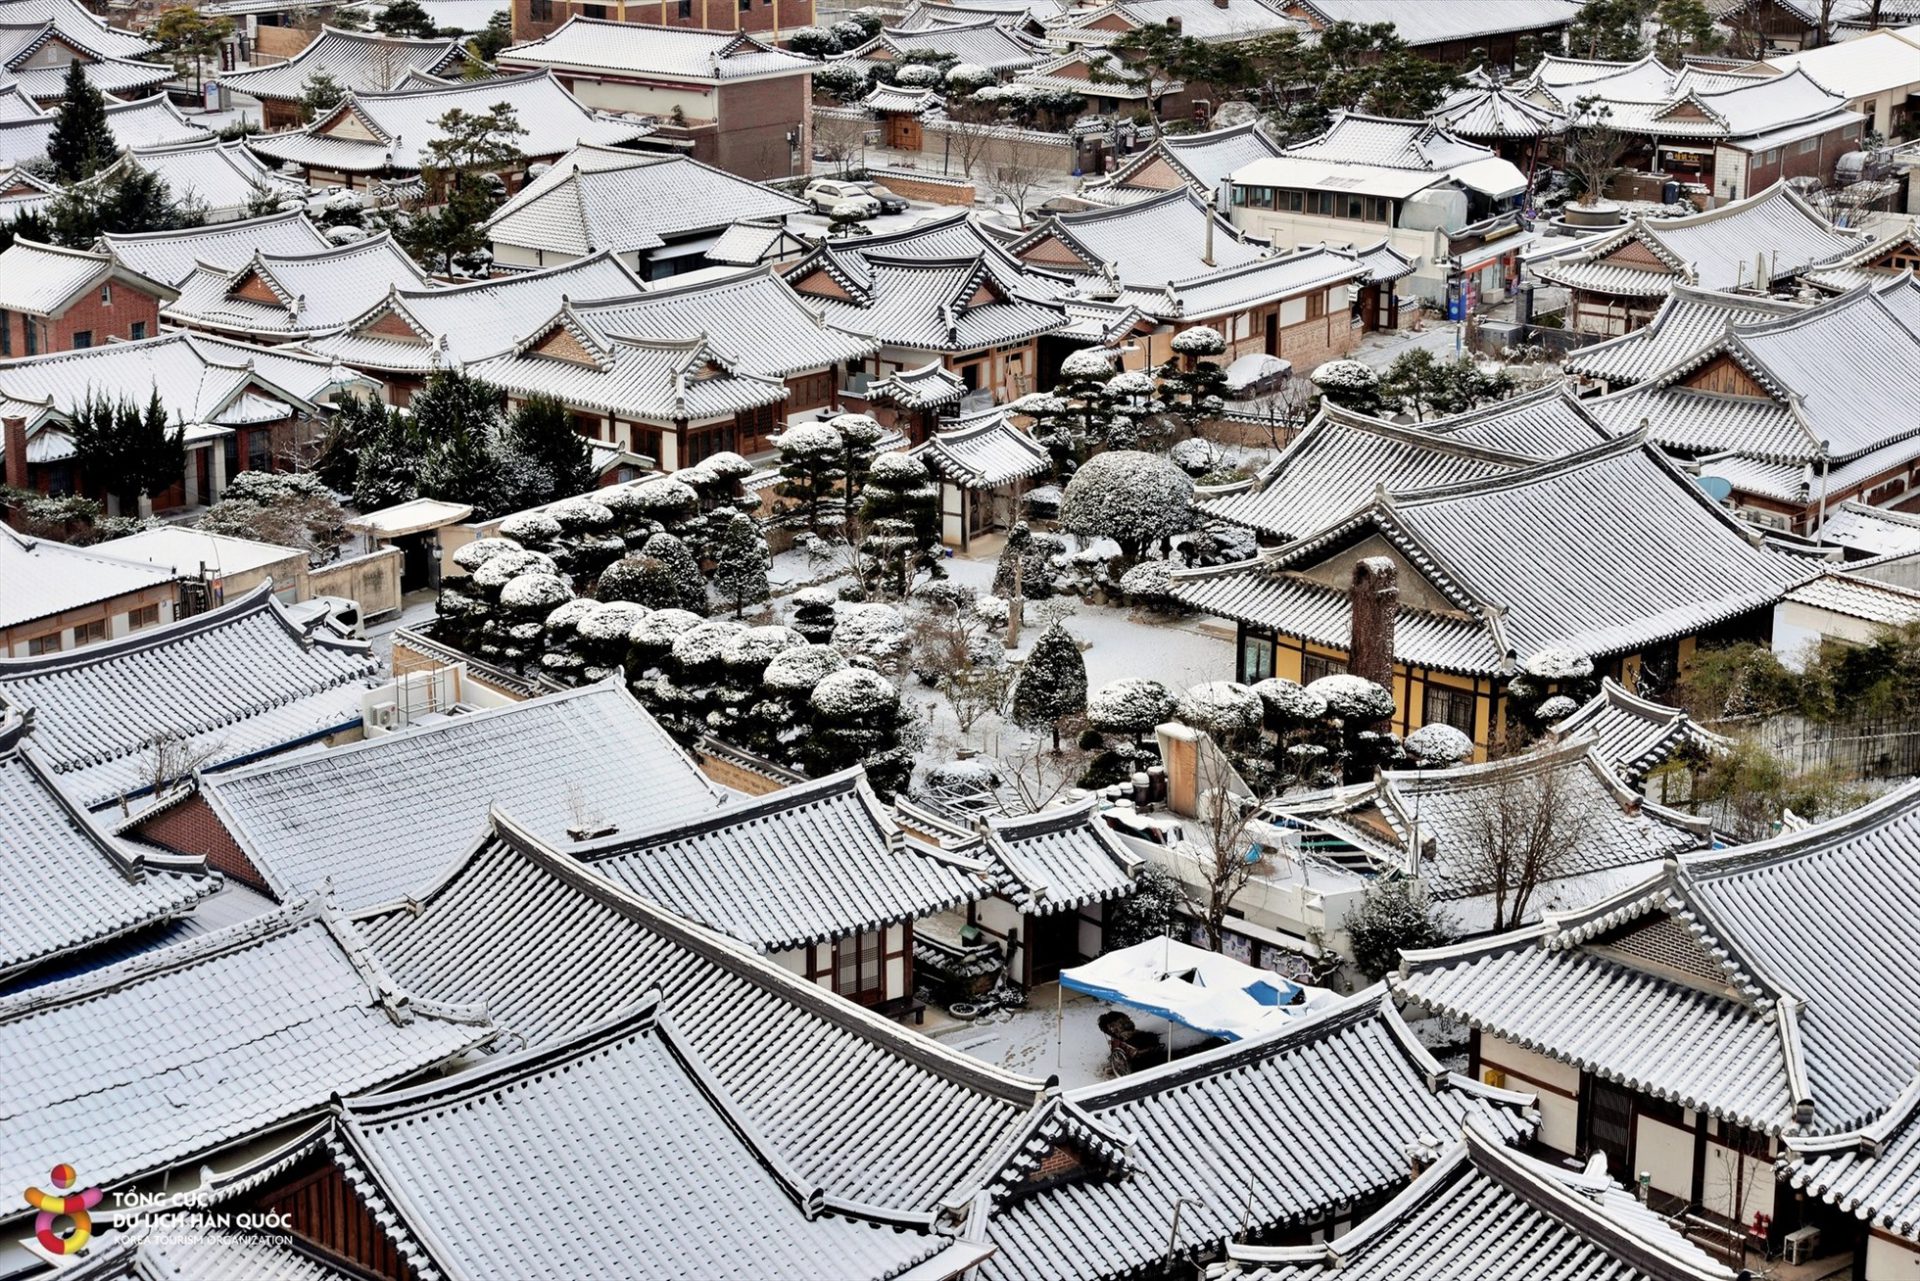 Những lớp tuyết dày đọng trên các mái nhà, cành cây, ngọn cỏ, đường phố tạo nên một bức tranh yên bình, tuyệt đẹp.